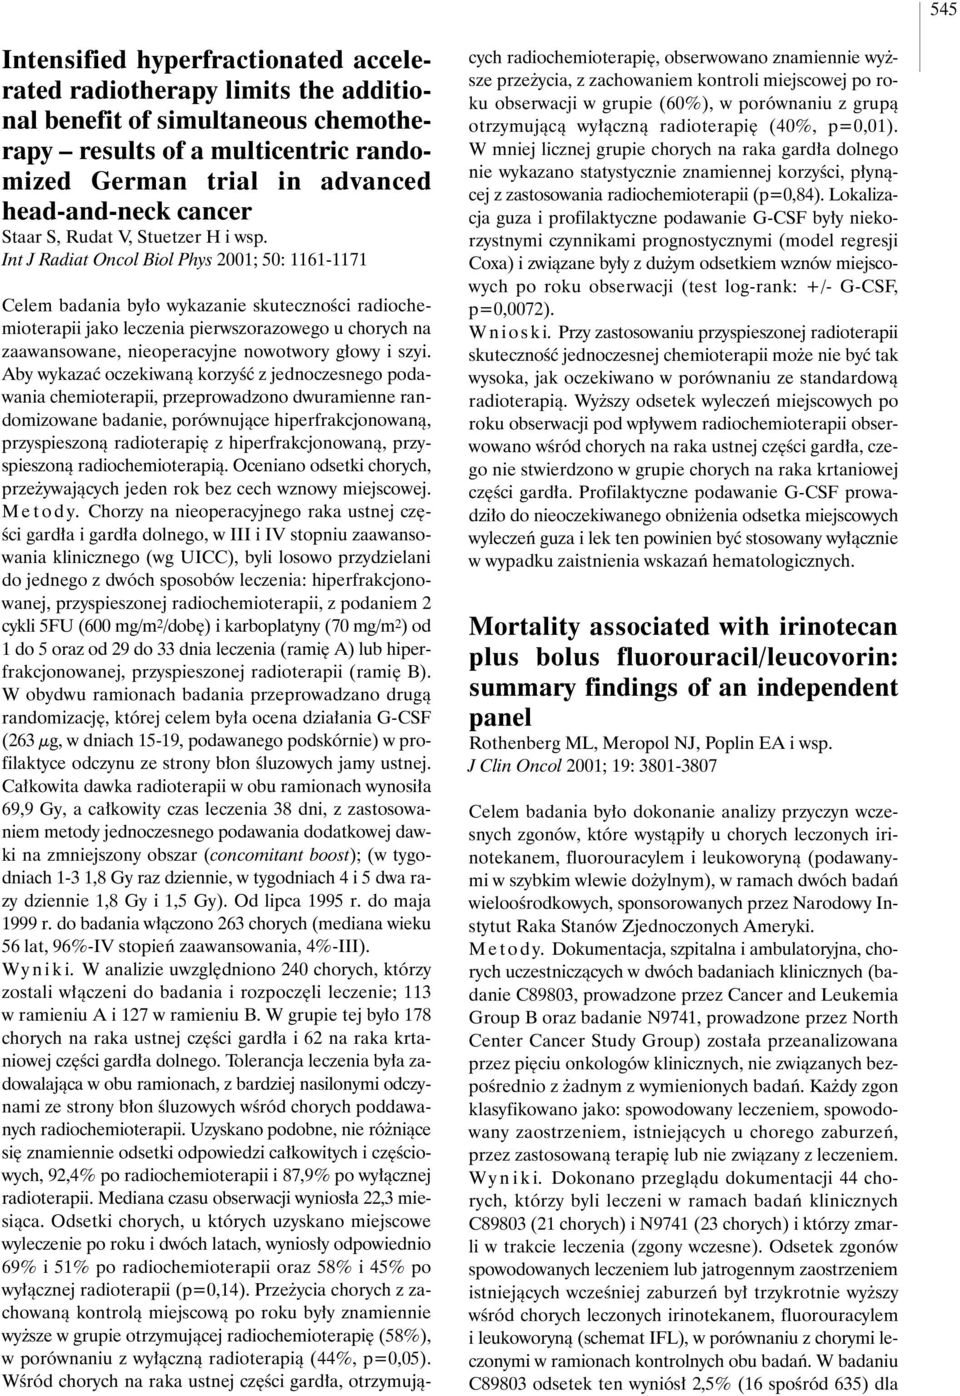 Int J Radiat Oncol Biol Phys 2001; 50: 1161-1171 Celem badania by o wykazanie skutecznoêci radiochemioterapii jako leczenia pierwszorazowego uchorych na zaawansowane, nieoperacyjne nowotwory g owy i